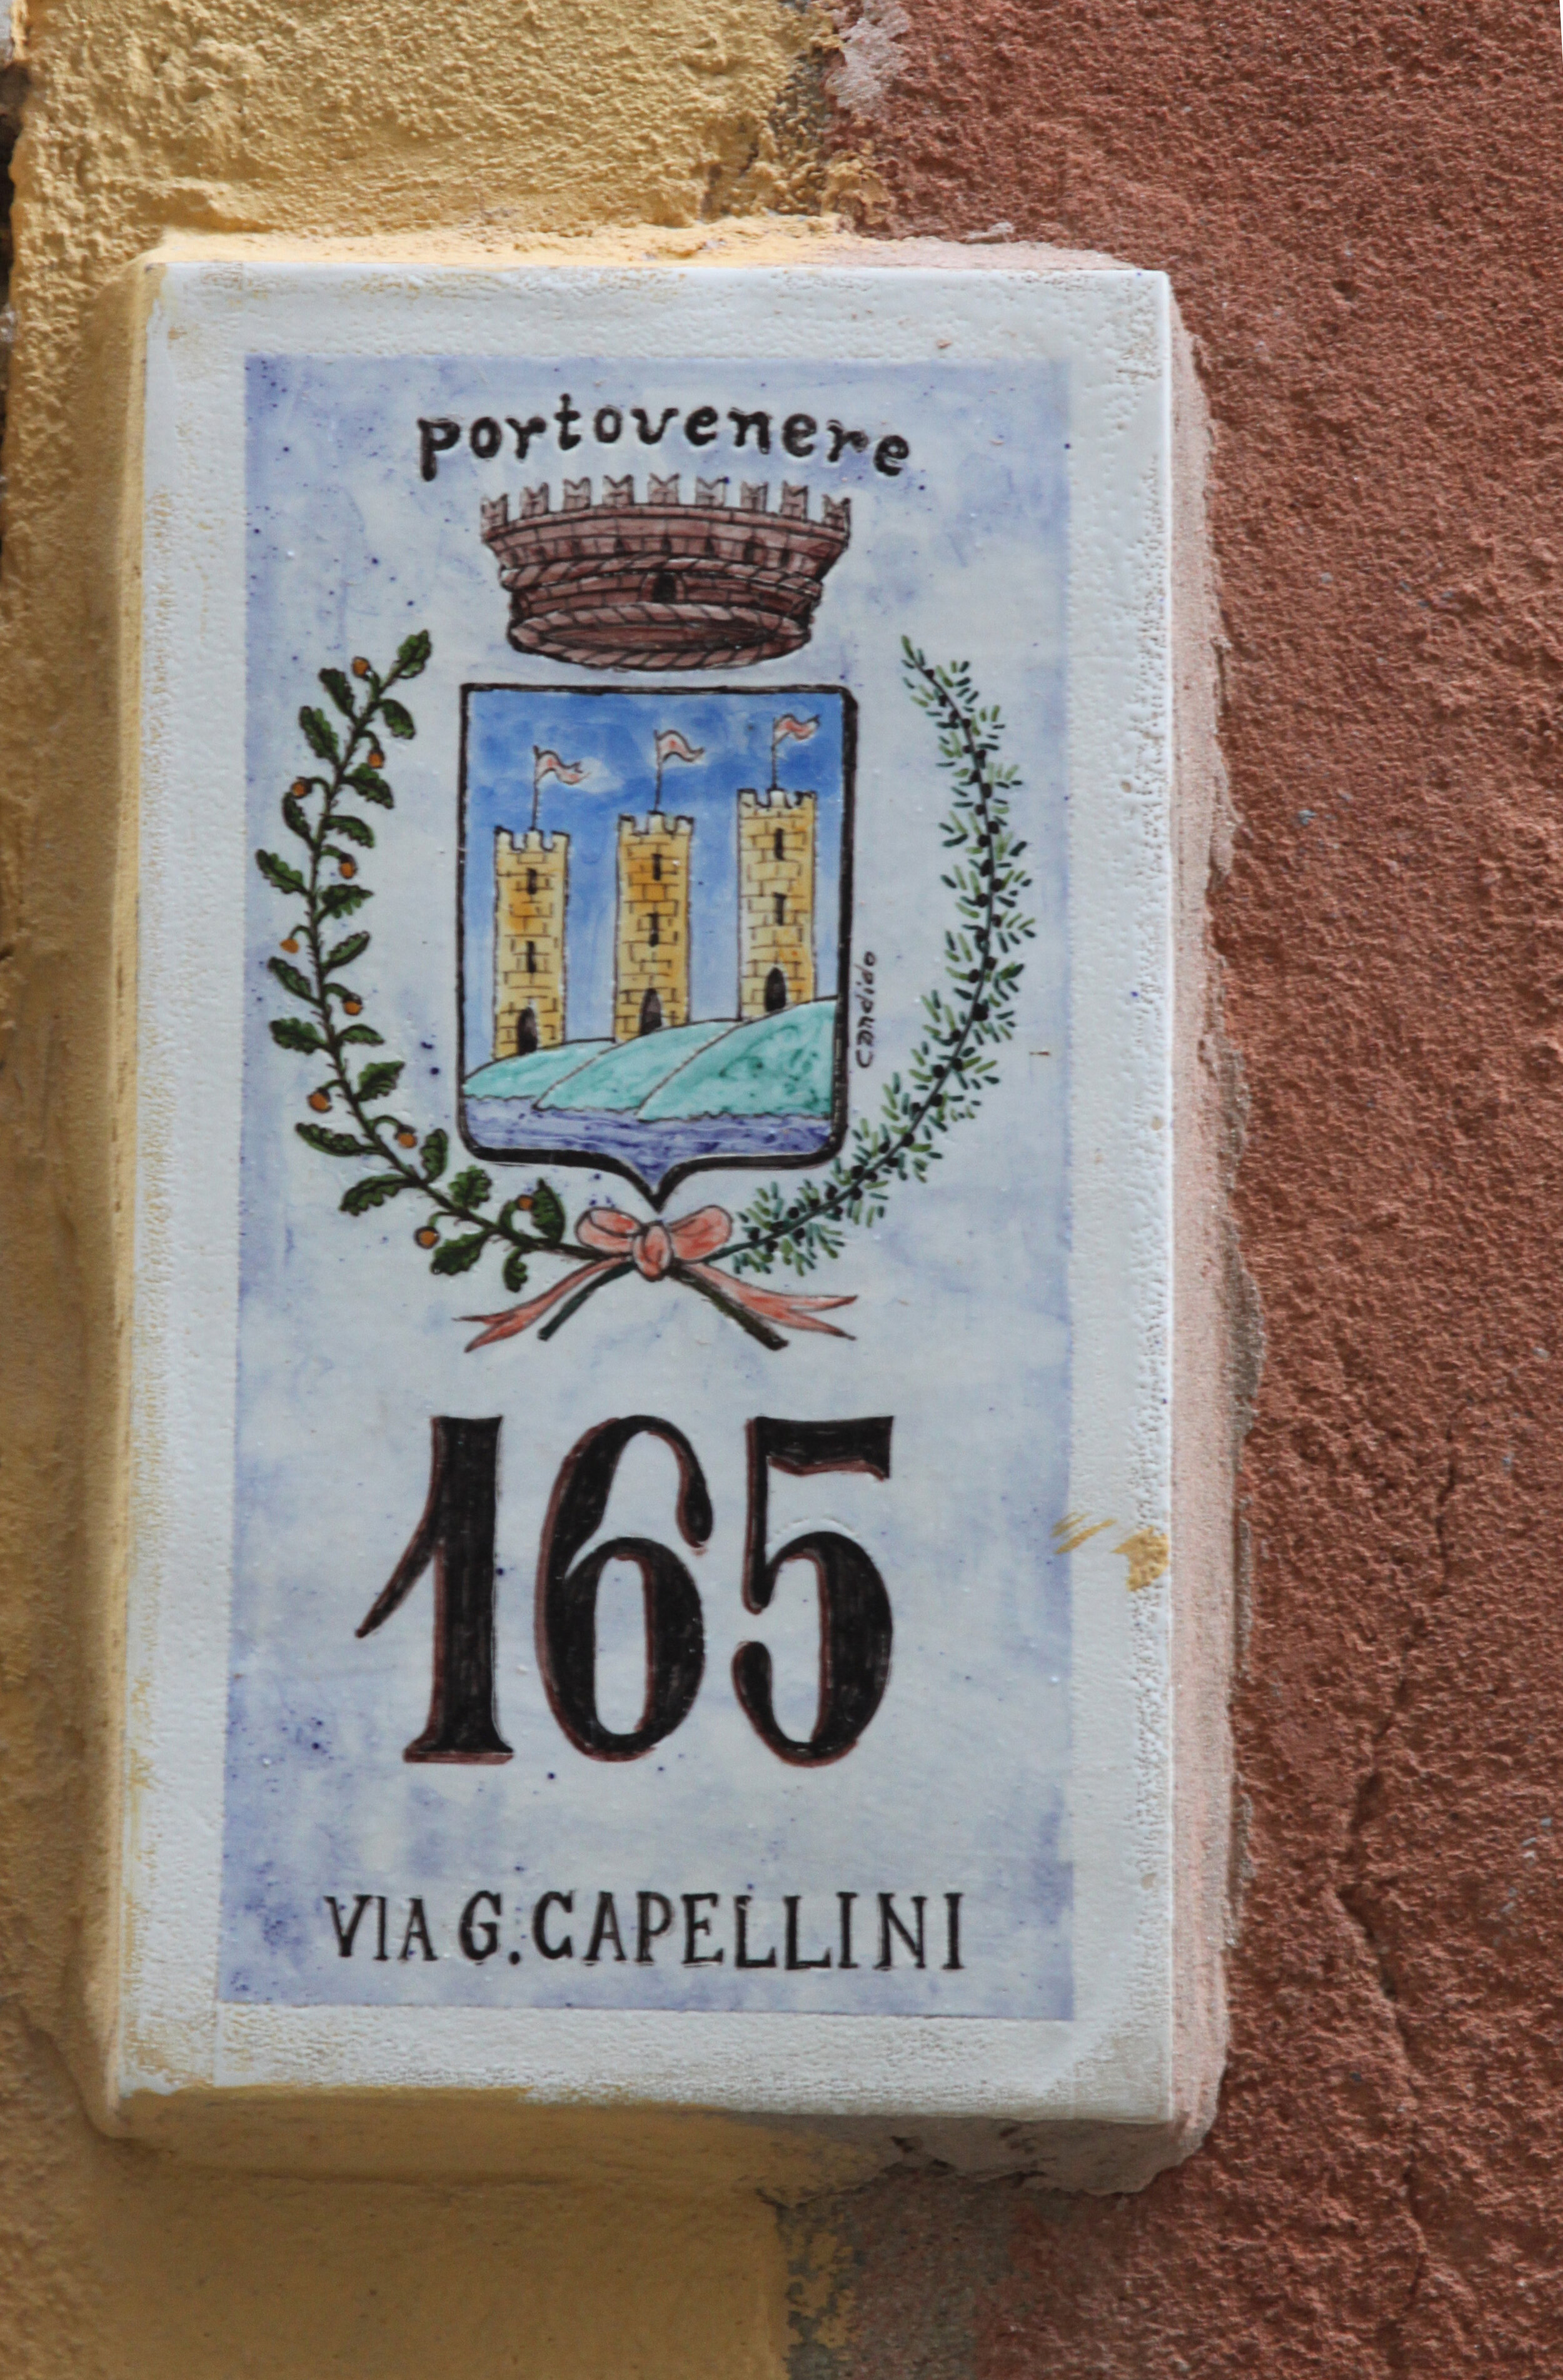  Door Number, Portovenere, Italy           